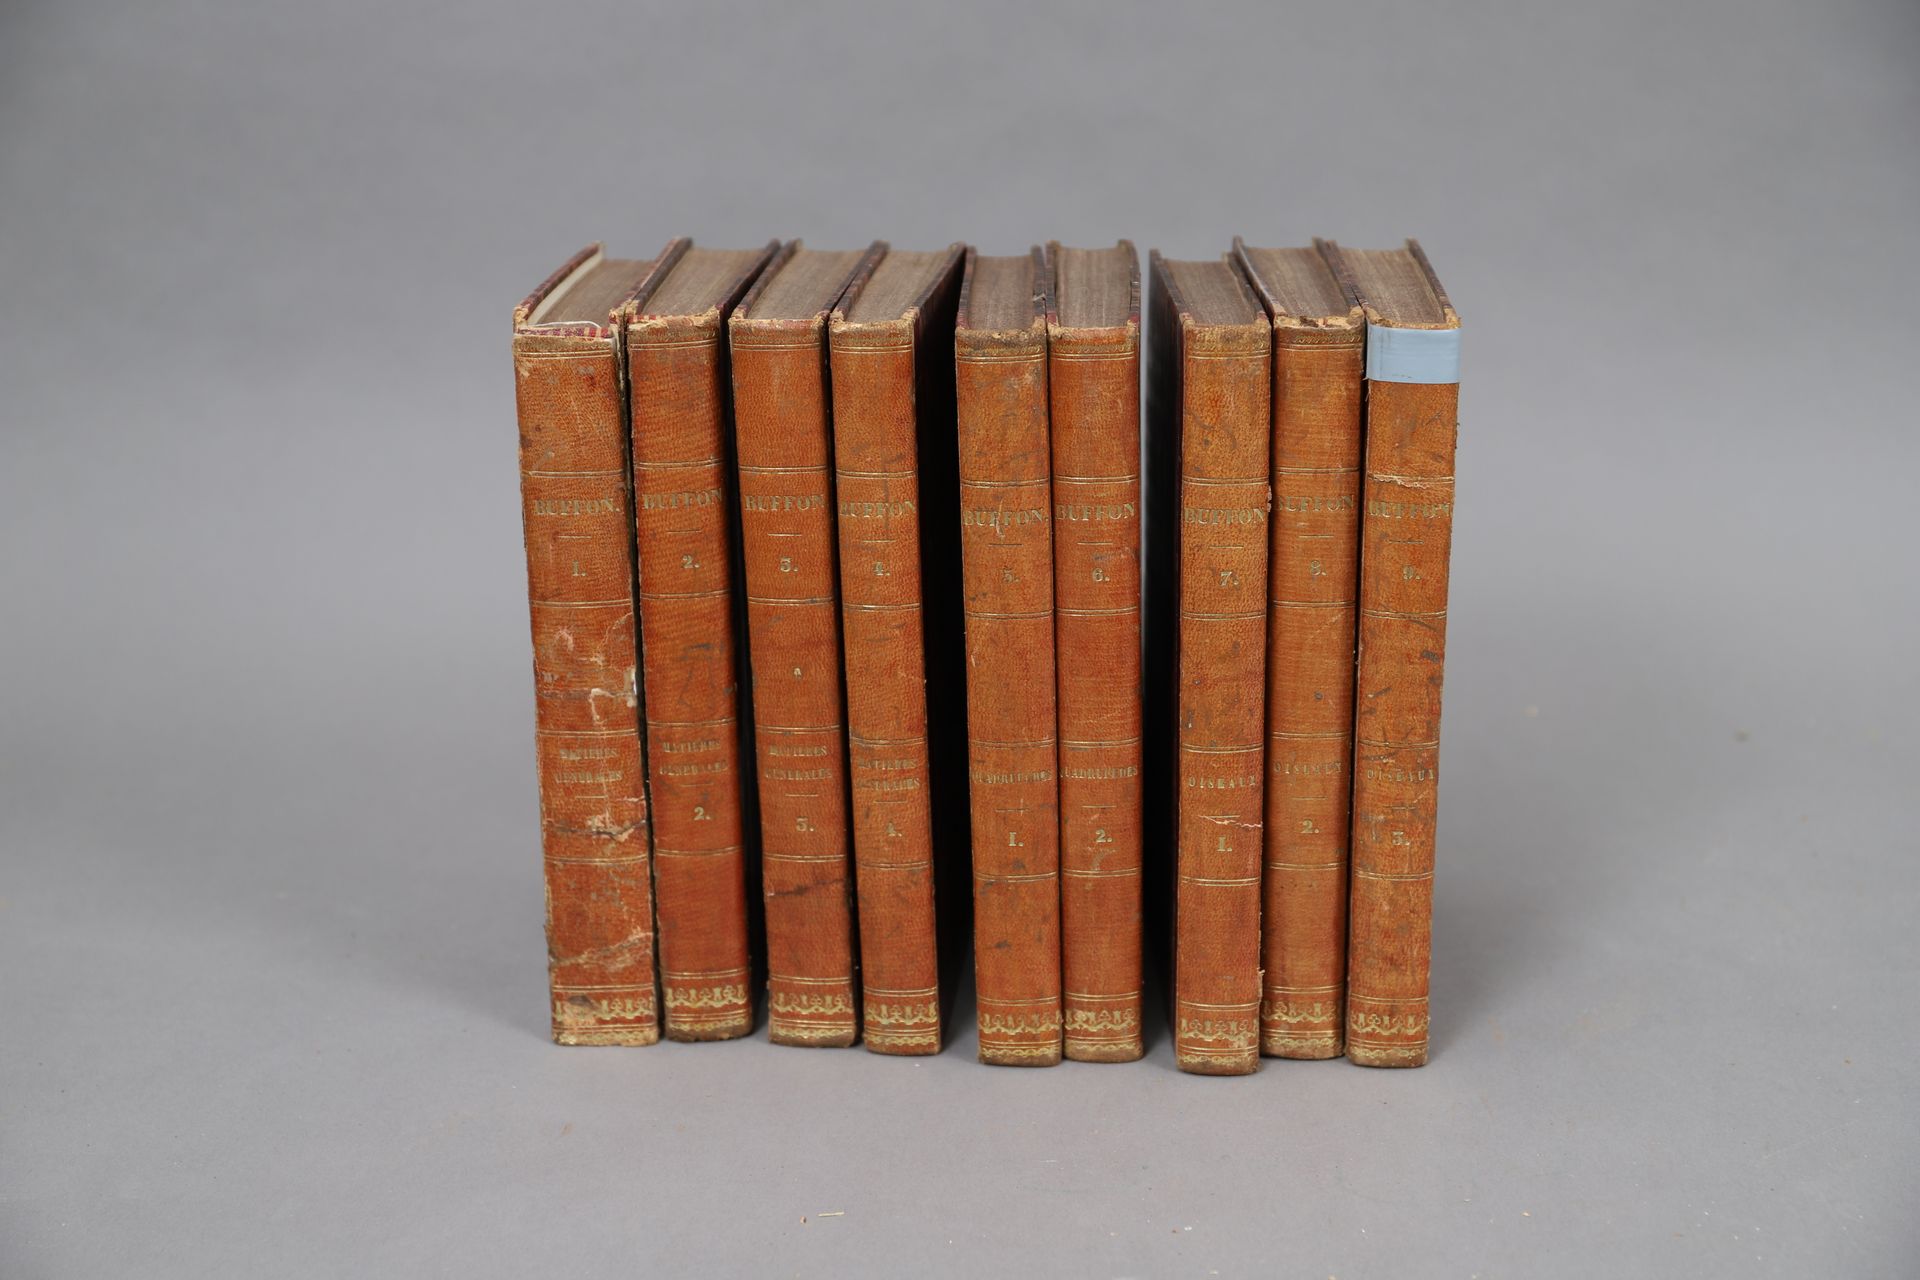 Null 布冯的作品

巴黎1835年。

9册合订本。